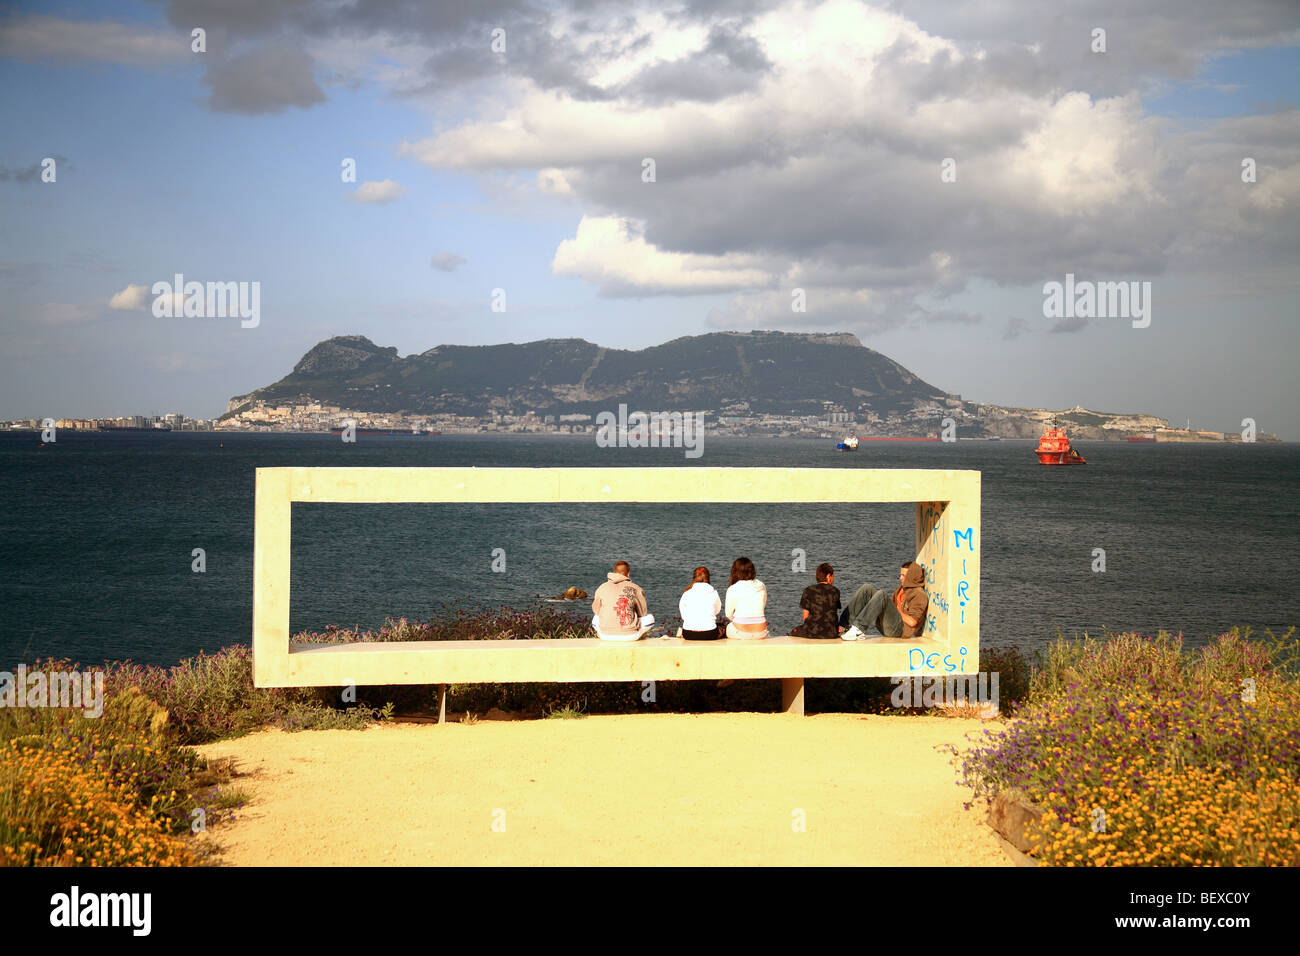 Gibraltar rock view from Centenario Park in Algeciras, Spain Stock Photo